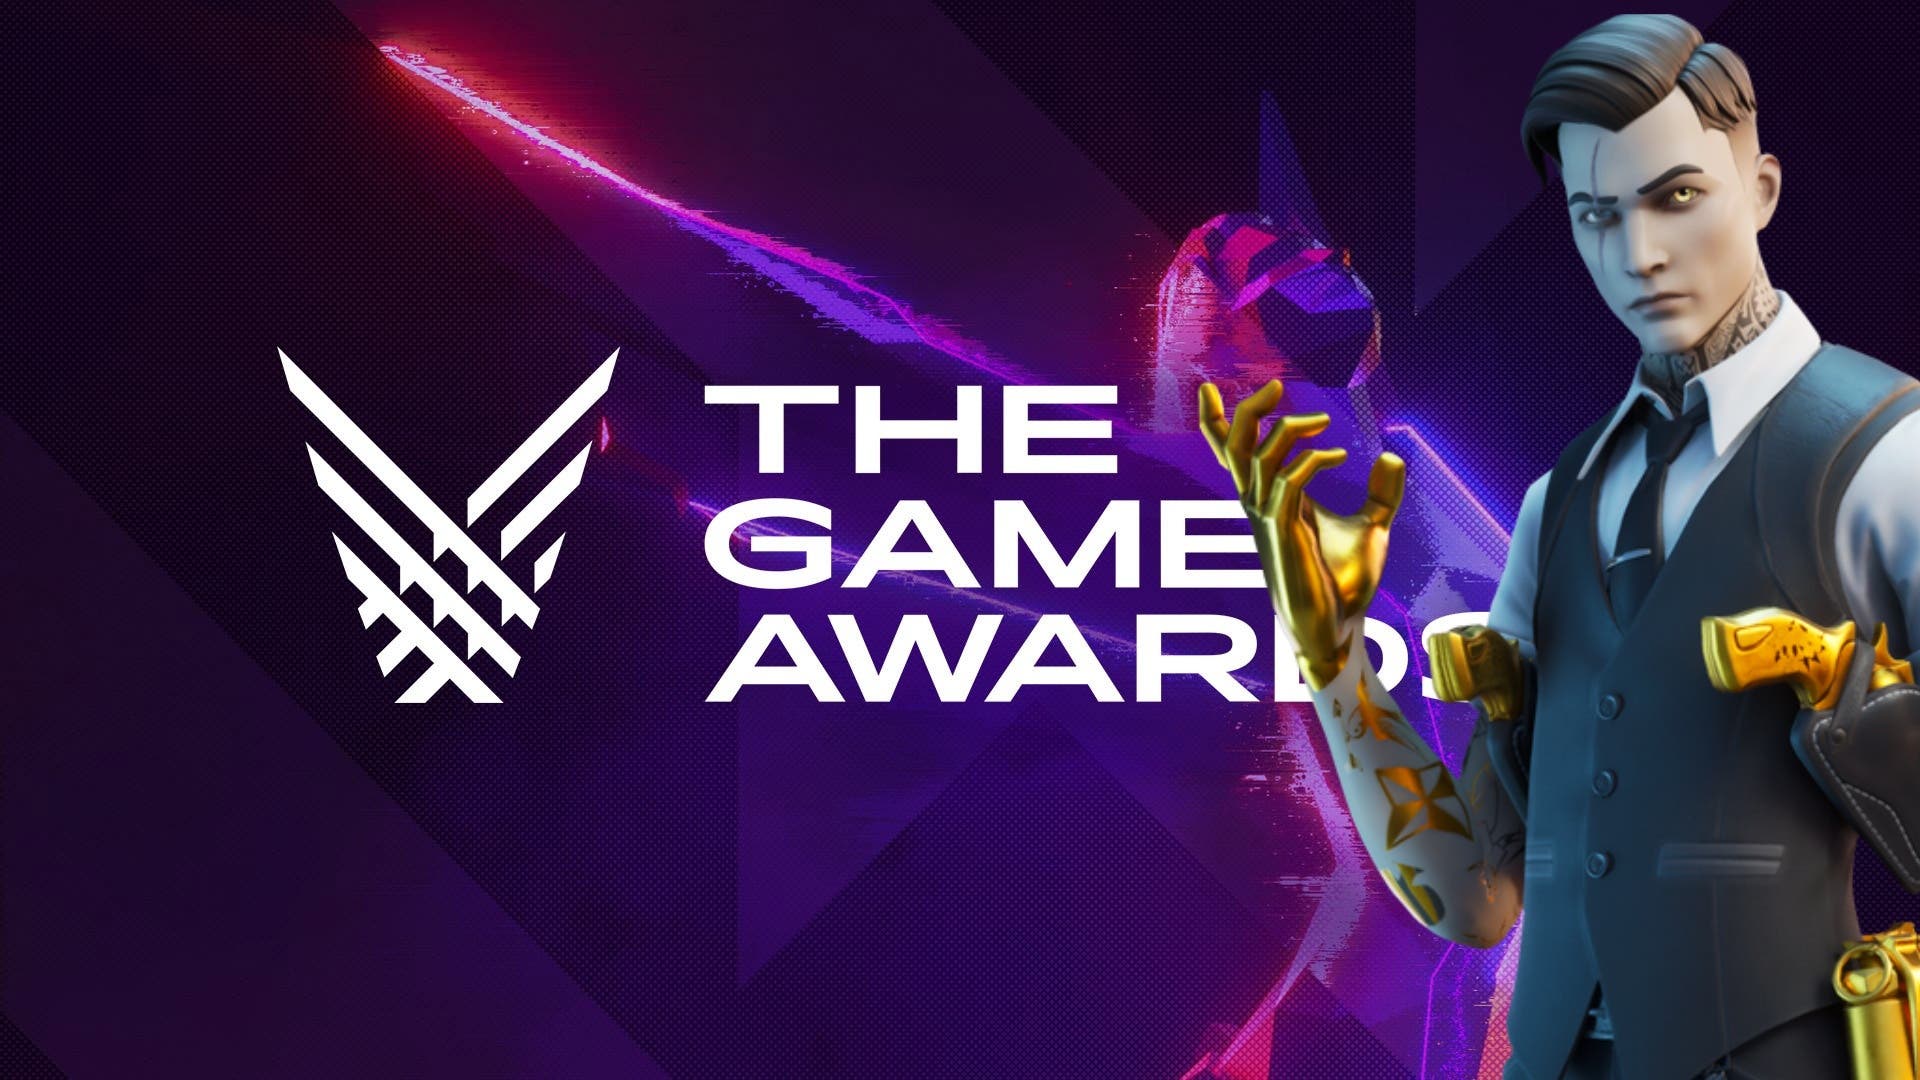 Gam Awards For Fortnite Fortnite Haria Un Gran Anuncio En The Game Awards 2020 Pero Que Podemos Esperar